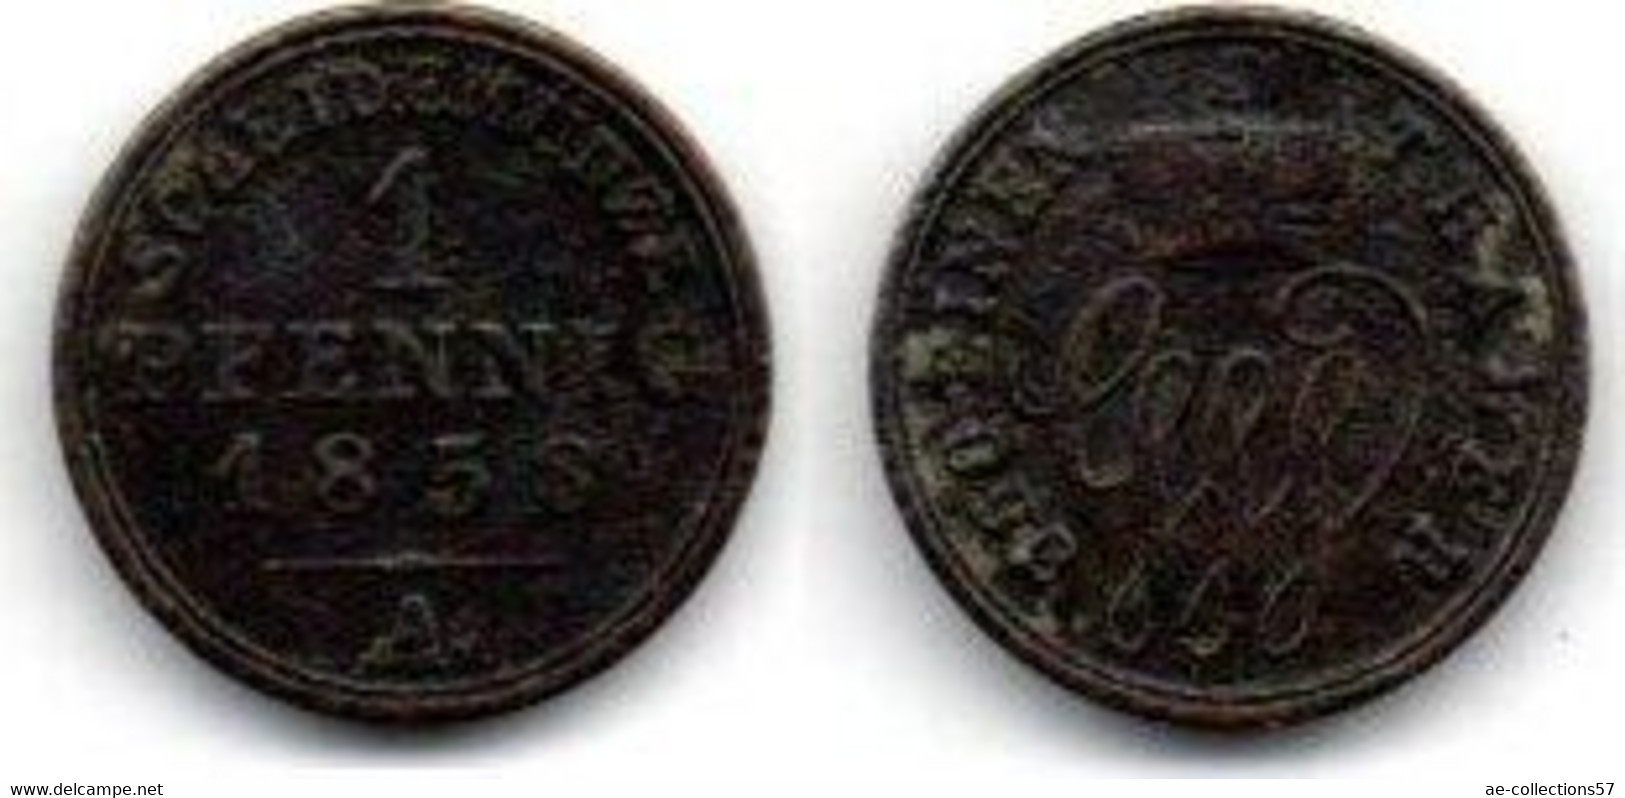 Schaumburg - Lippe 1 Pfennig 1878 A TTB - Monedas Pequeñas & Otras Subdivisiones